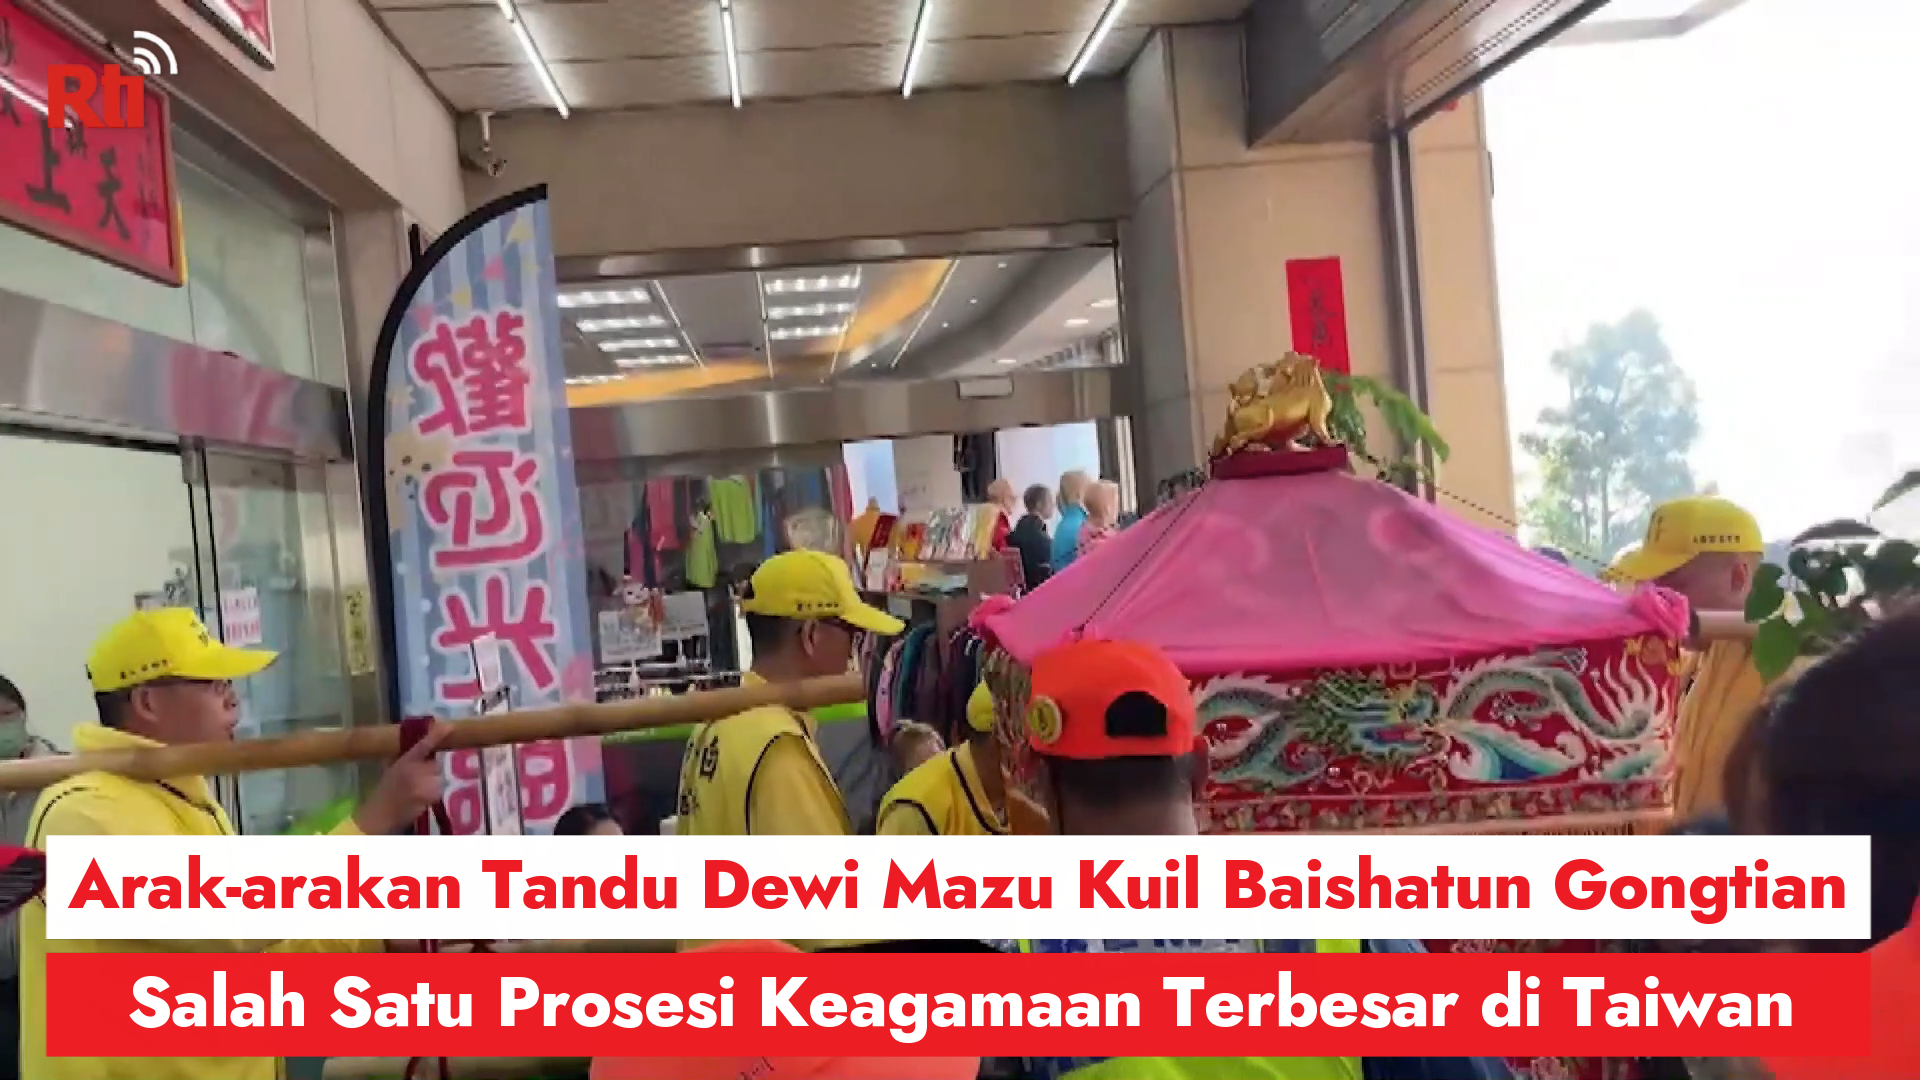 Salah Satu Prosesi Keagamaan Terbesar di Taiwan, Arak-arakan Tandu Dewi Mazu Memberkati Warga